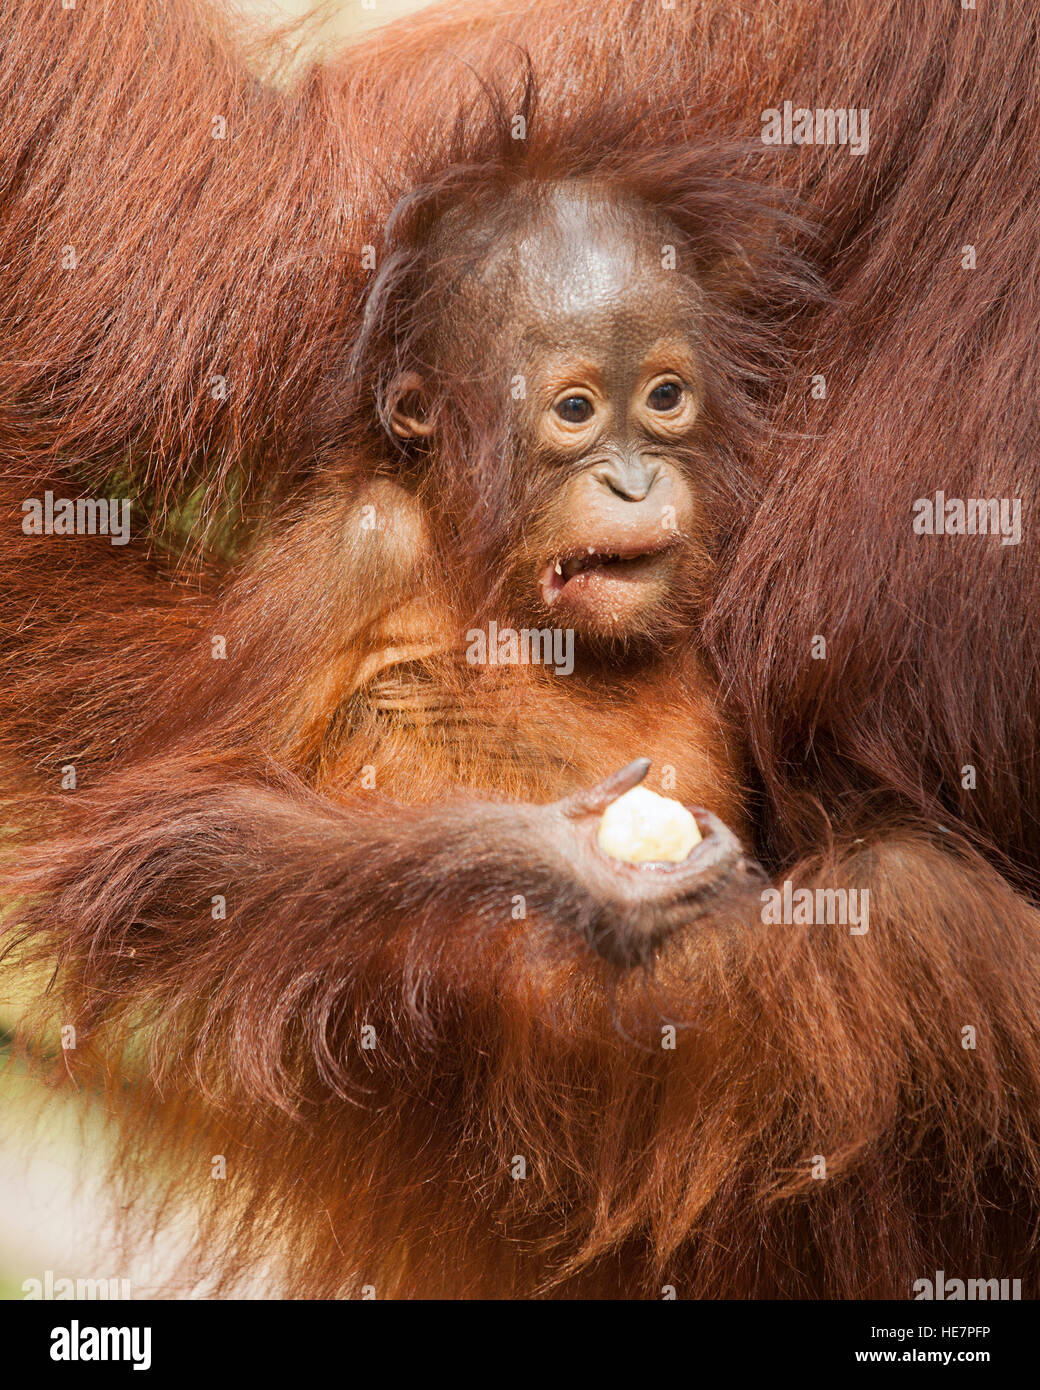 Orang-outan sauvage bébé (Pongo pygmaeus) faisant un visage tout en serrant morceau de plate-forme d'alimentation d'appoint à partir de la banane Banque D'Images